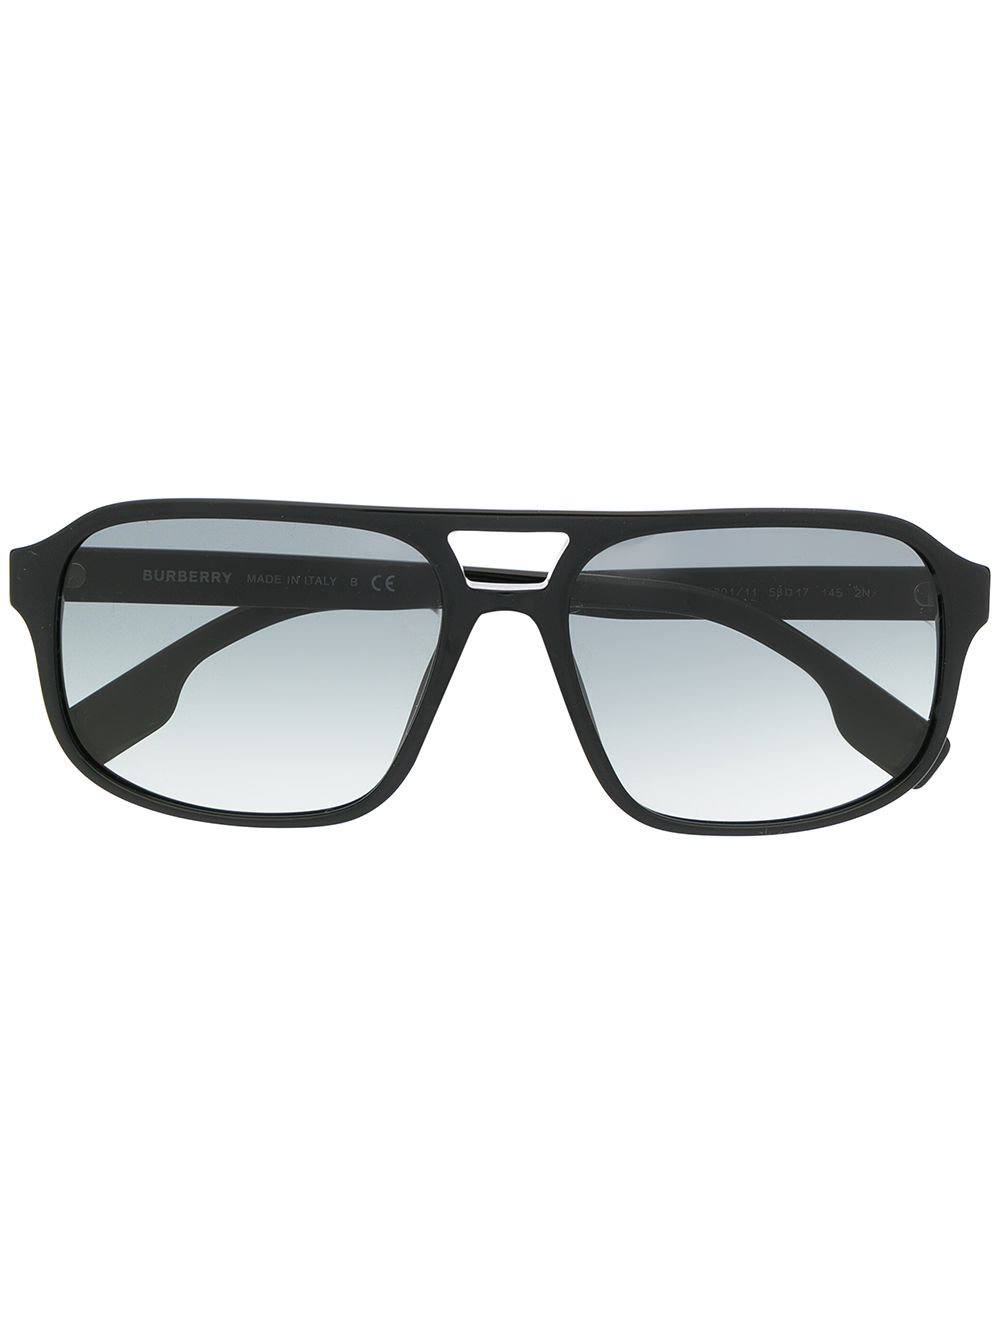 фото Burberry eyewear солнцезащитные очки-авиаторы